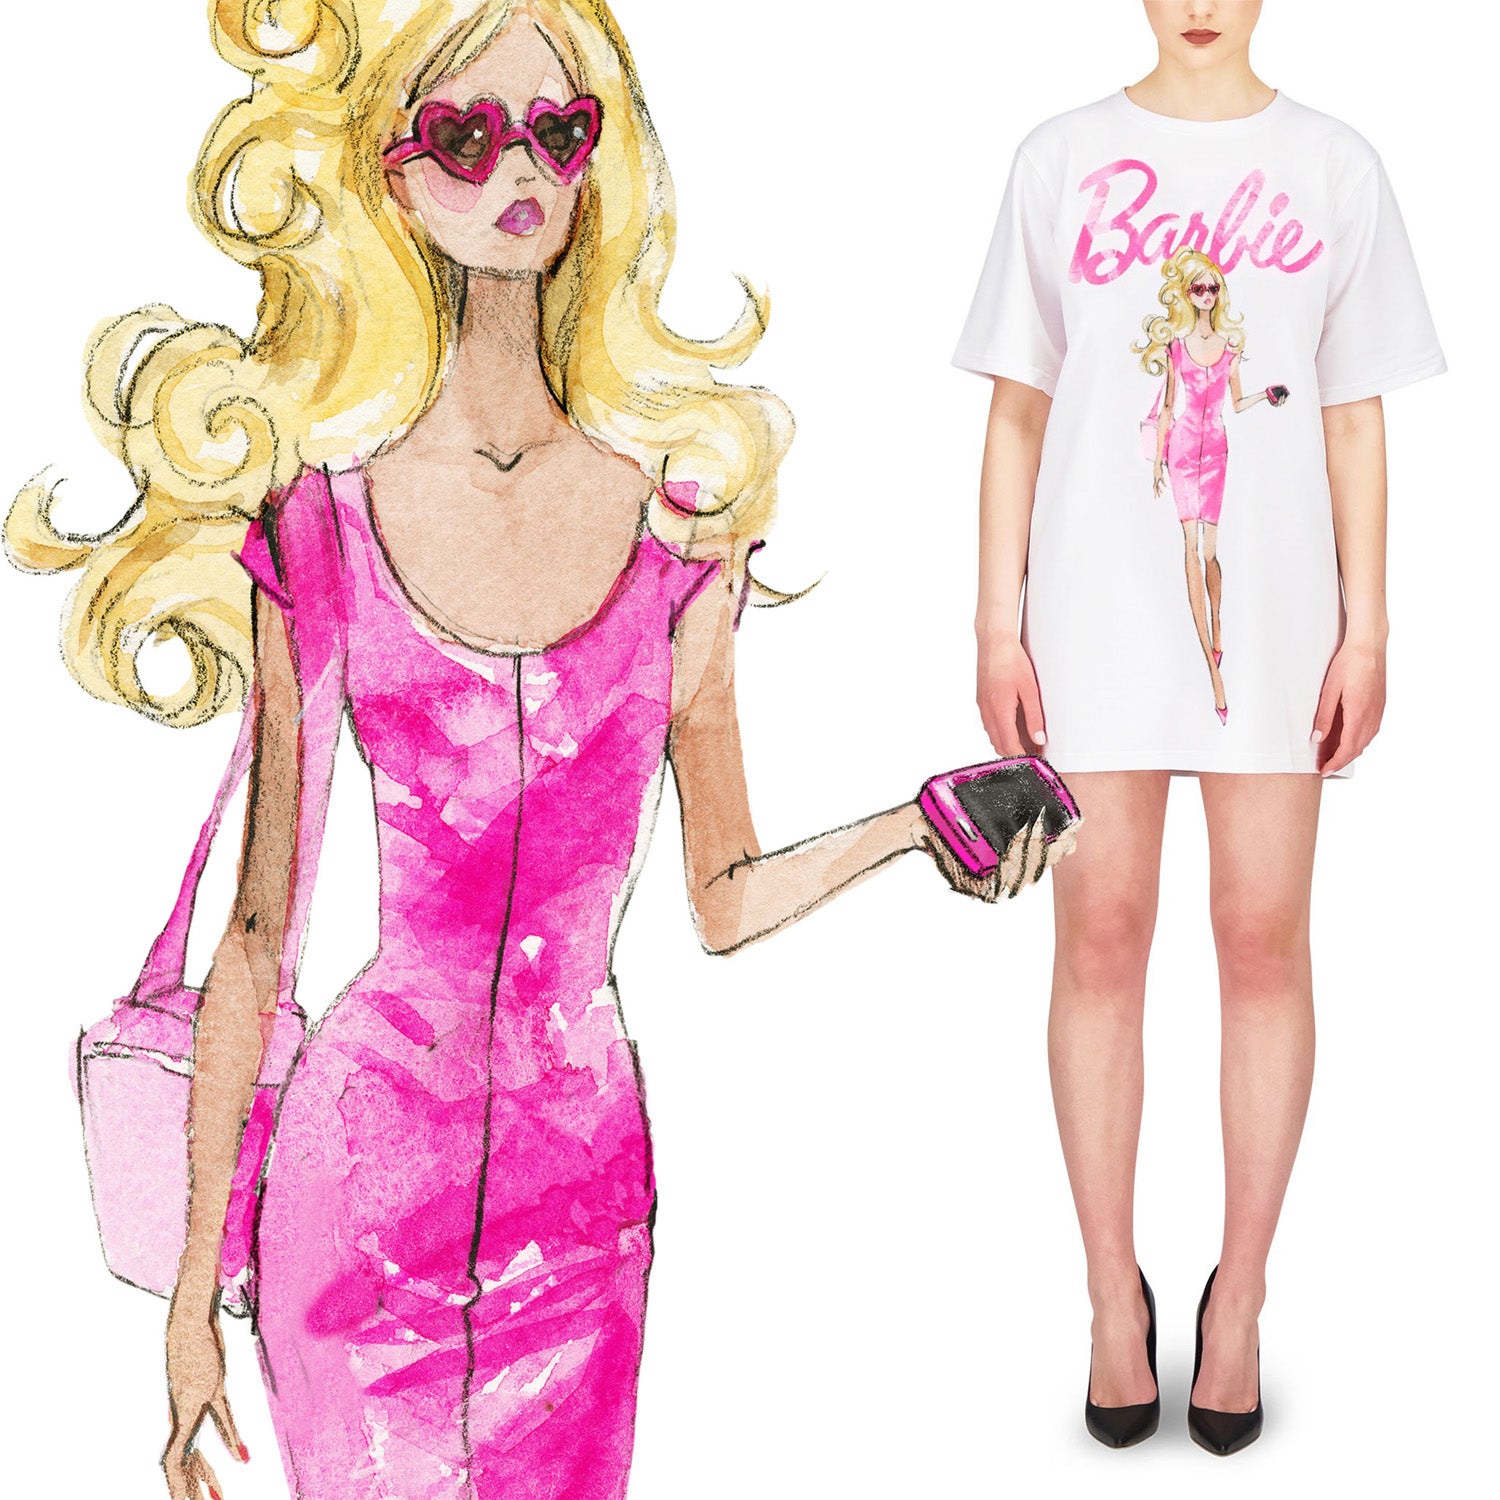 Era obrigatório usar roupas rosas em ‘Barbie’, caso